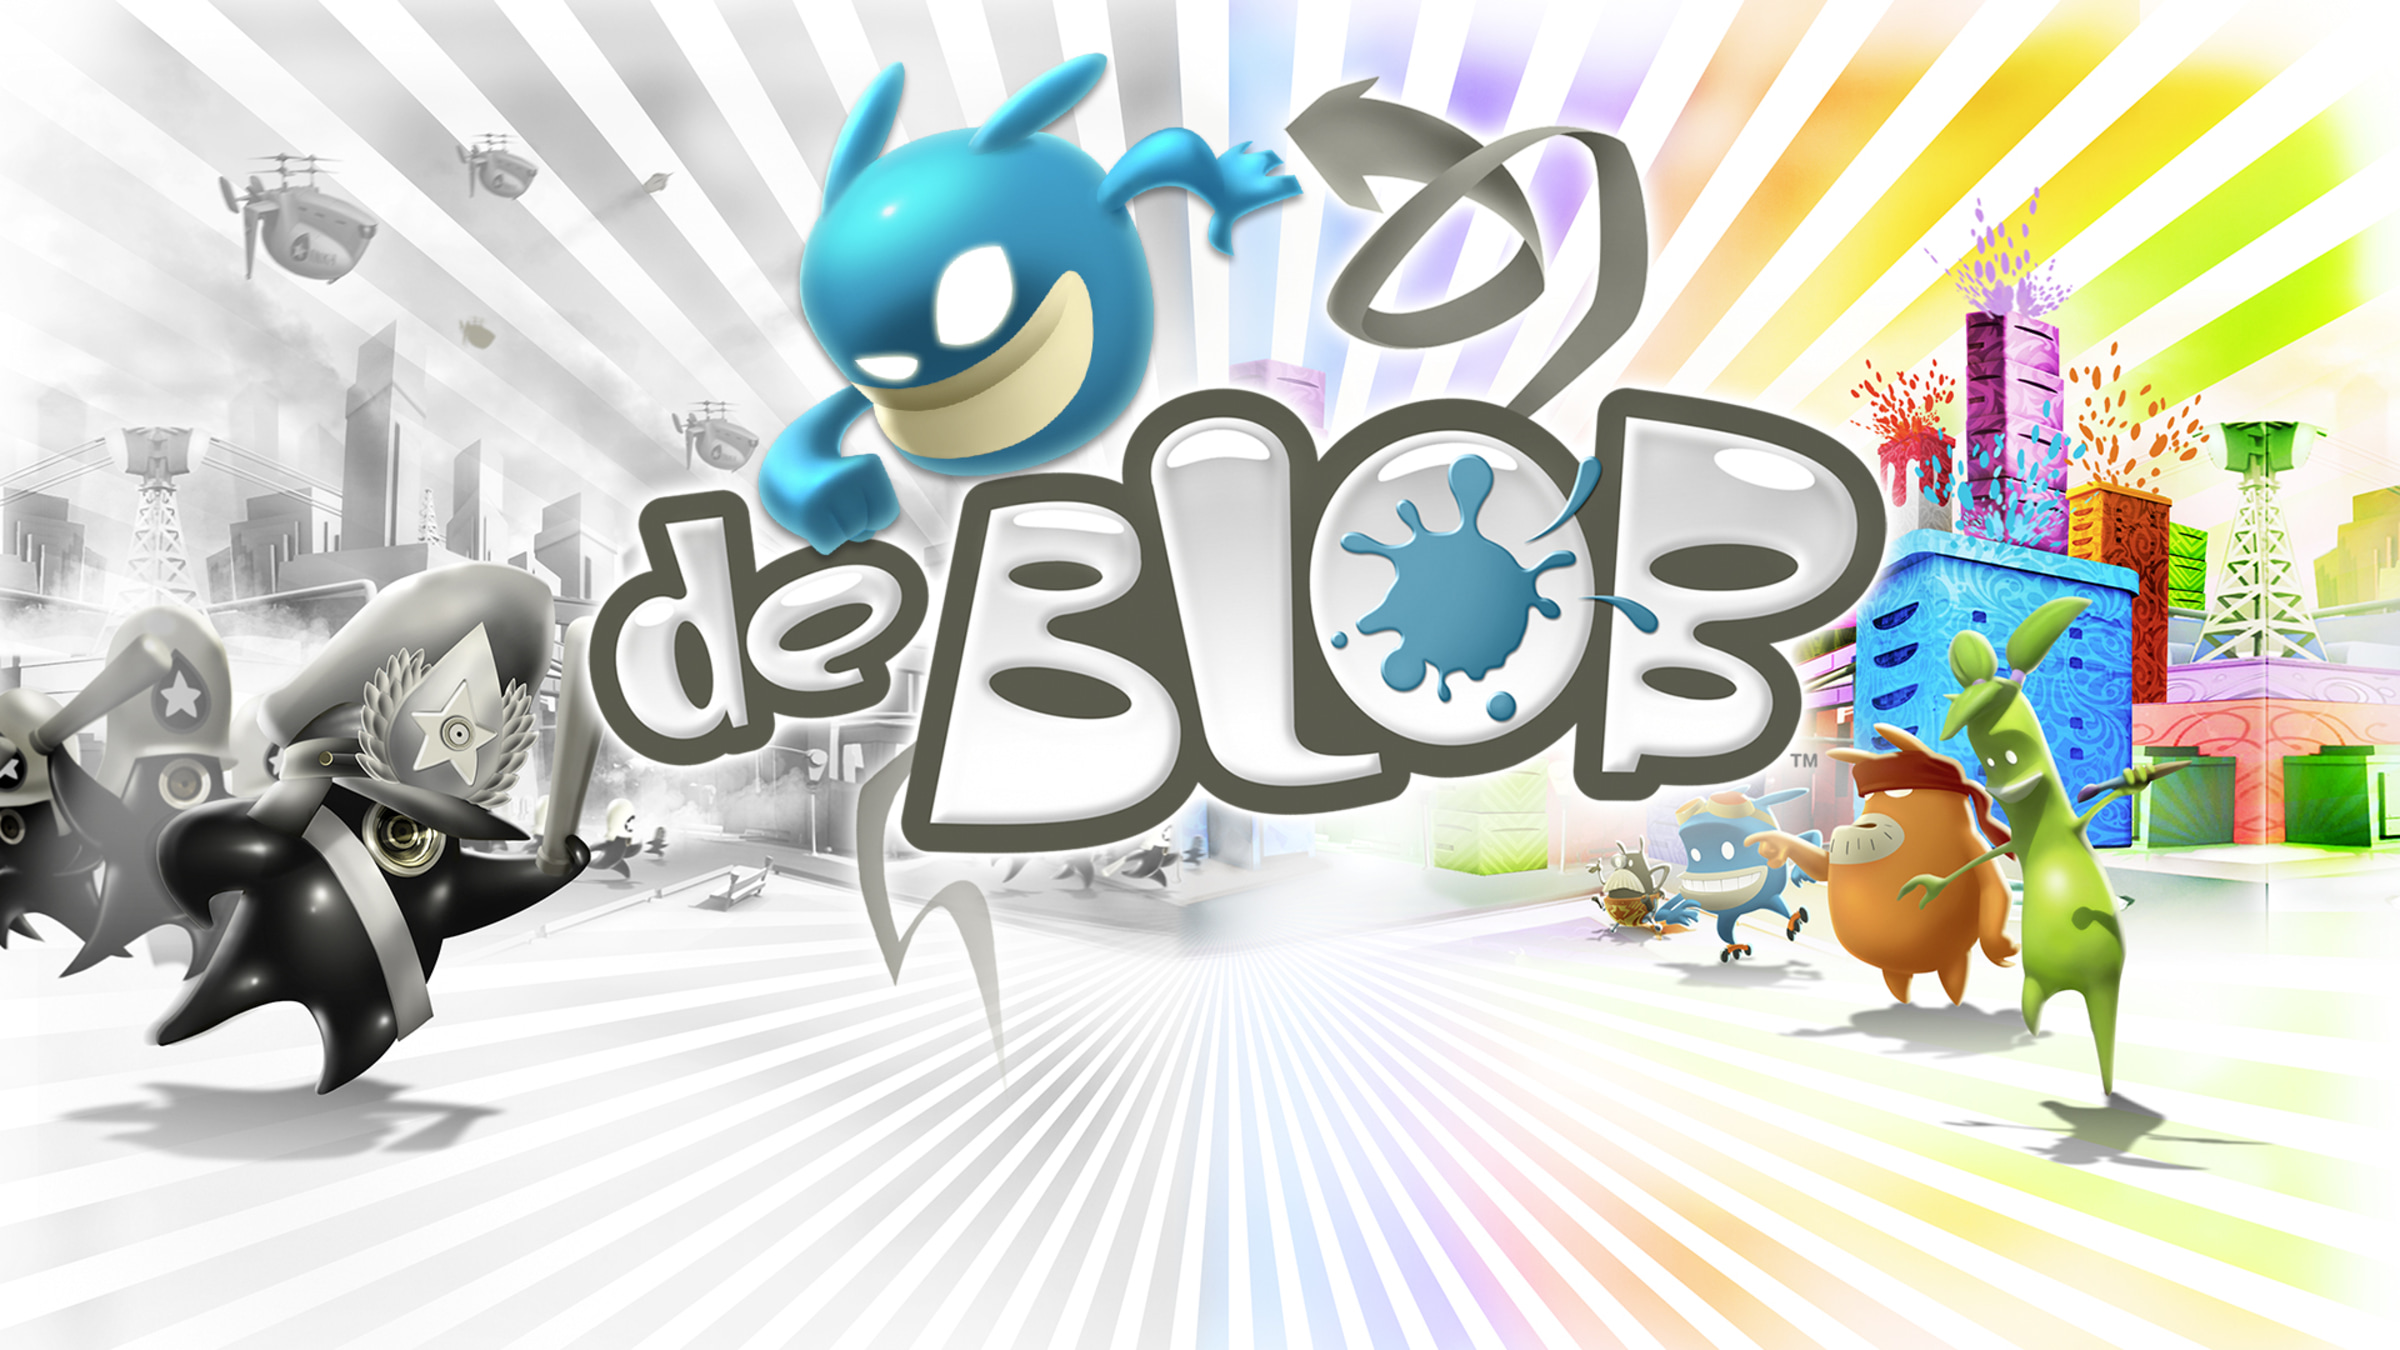 de Blob for Nintendo Switch - Nintendo Official Site